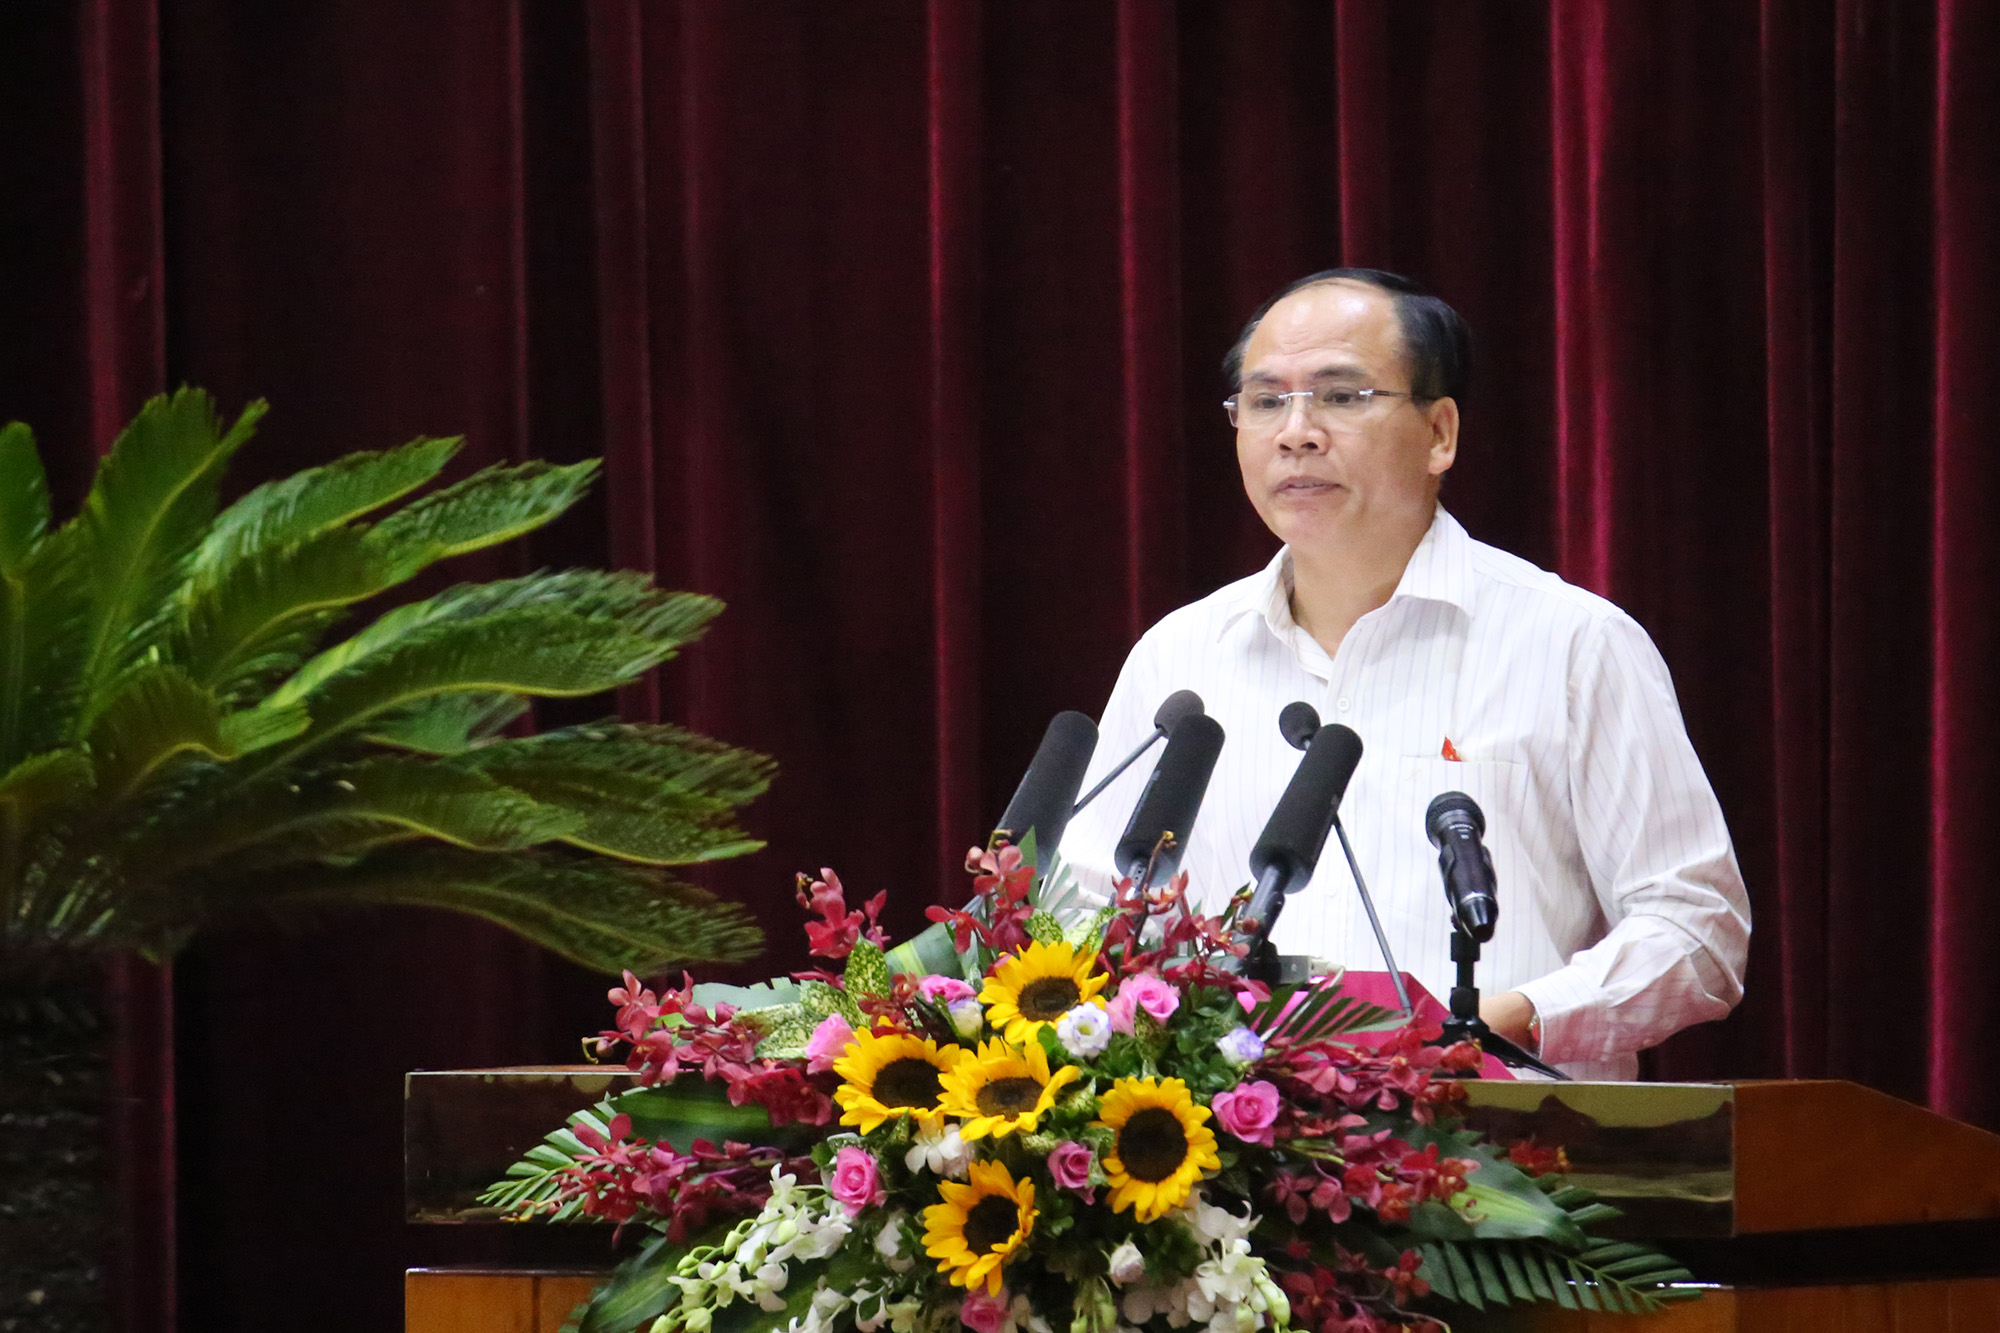 Đại biểu Trần Văn Lâm, Tổ đại biểu Uông Bí: Phát triển kinh tế biển đồng bộ, bài bản; tập trung sản xuất sản phẩm có hàm lượng khoa học công nghệ cao; đẩy nhanh tiến độ đầu tư hạ tầng các khu kinh tế…